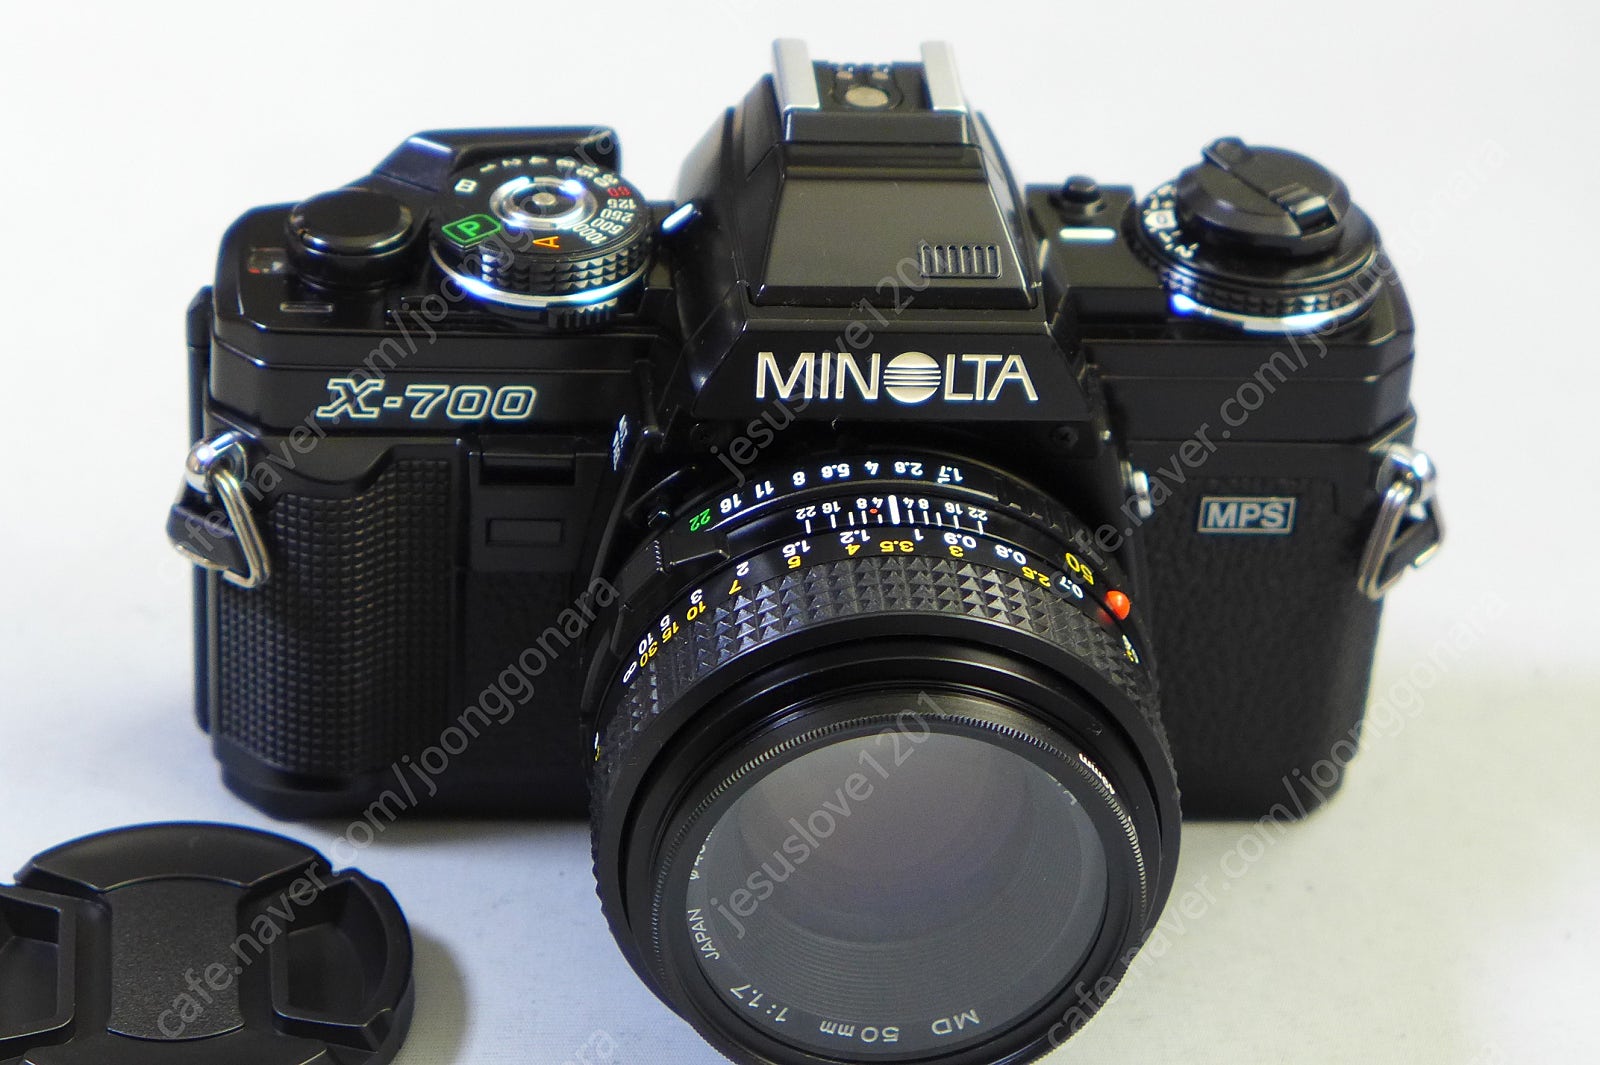 신동미놀타X700 MD 50mm 1.4 Lens 후레쉬 포함